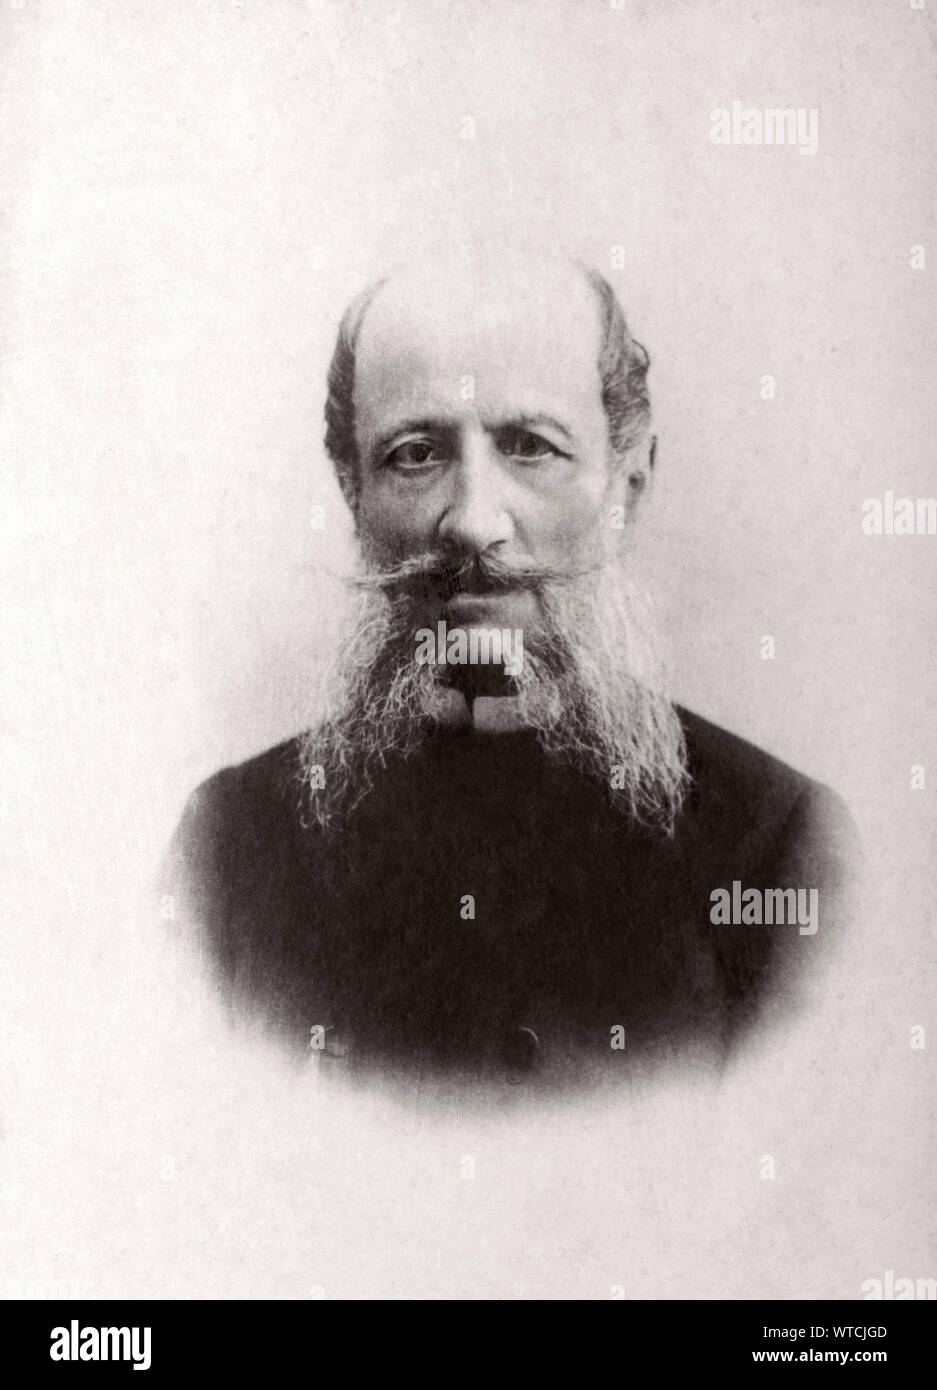 Le Baron Arthur von Mohrenheim (1824 - 1906) était un diplomate de l'Empire russe qui a servi comme ambassadeur en France de 1884 à 1897 et a joué un leadi Banque D'Images